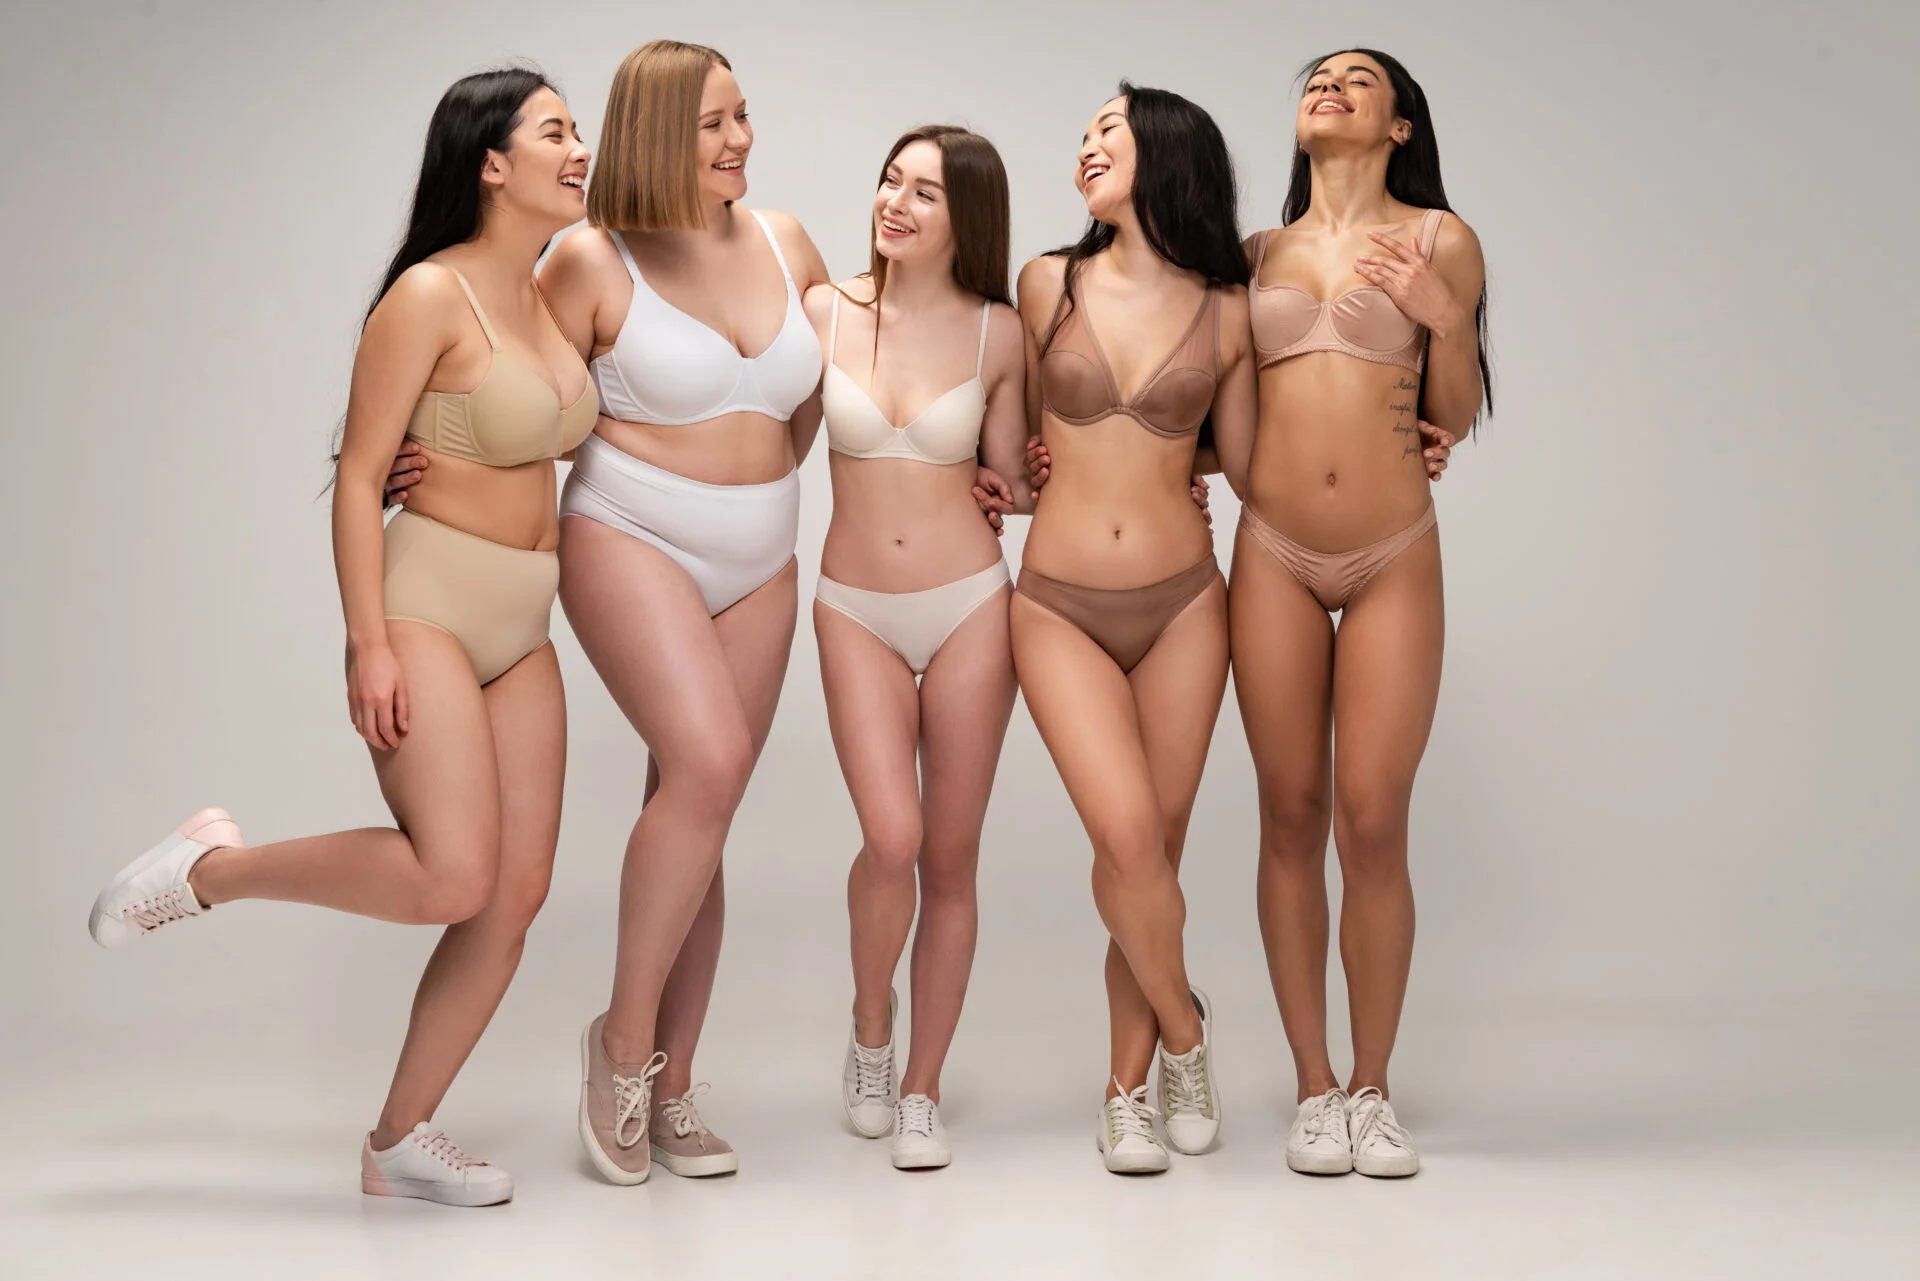 Women wearing Tampons in their underwear